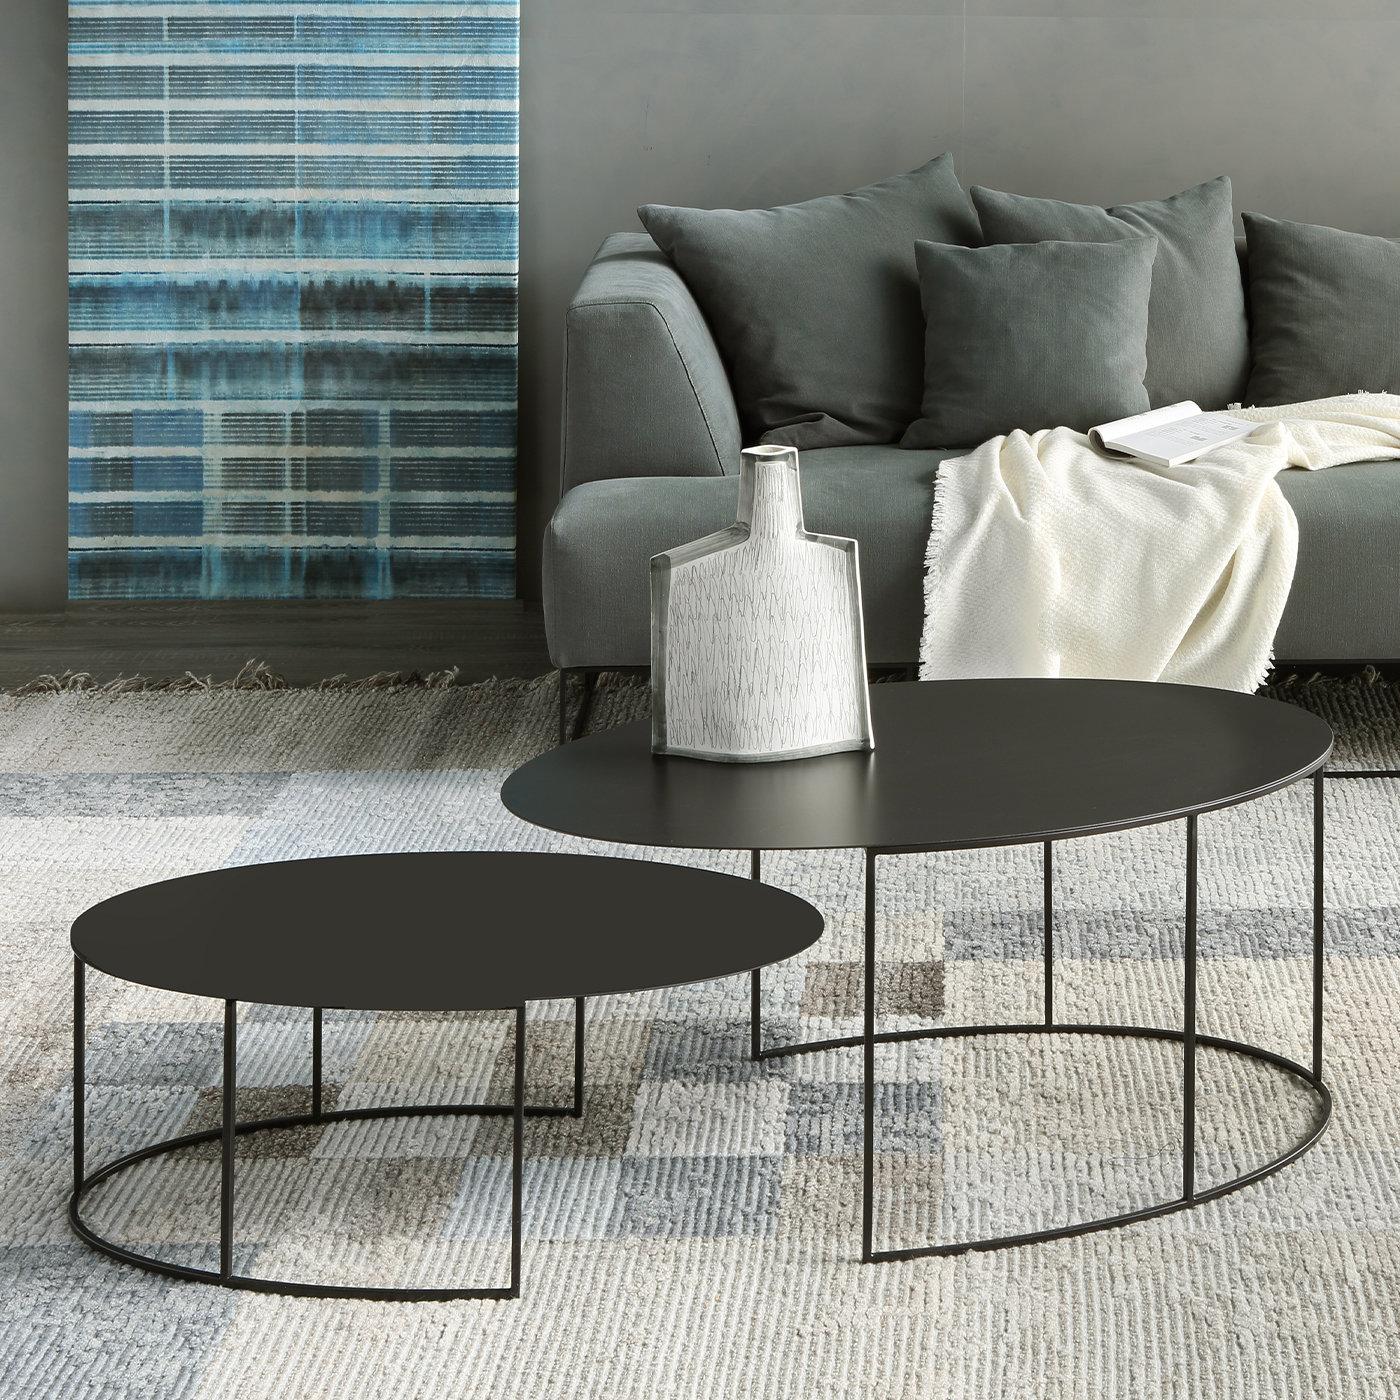 Cet ensemble saisissant de deux tables ovales est conçu pour créer un point focal accrocheur dans tout intérieur. Reposant sur une base ouverte semi-circulaire en tubes d'acier (8 x 8 mm) peints à l'époxy en noir cuivre avec un effet de texture